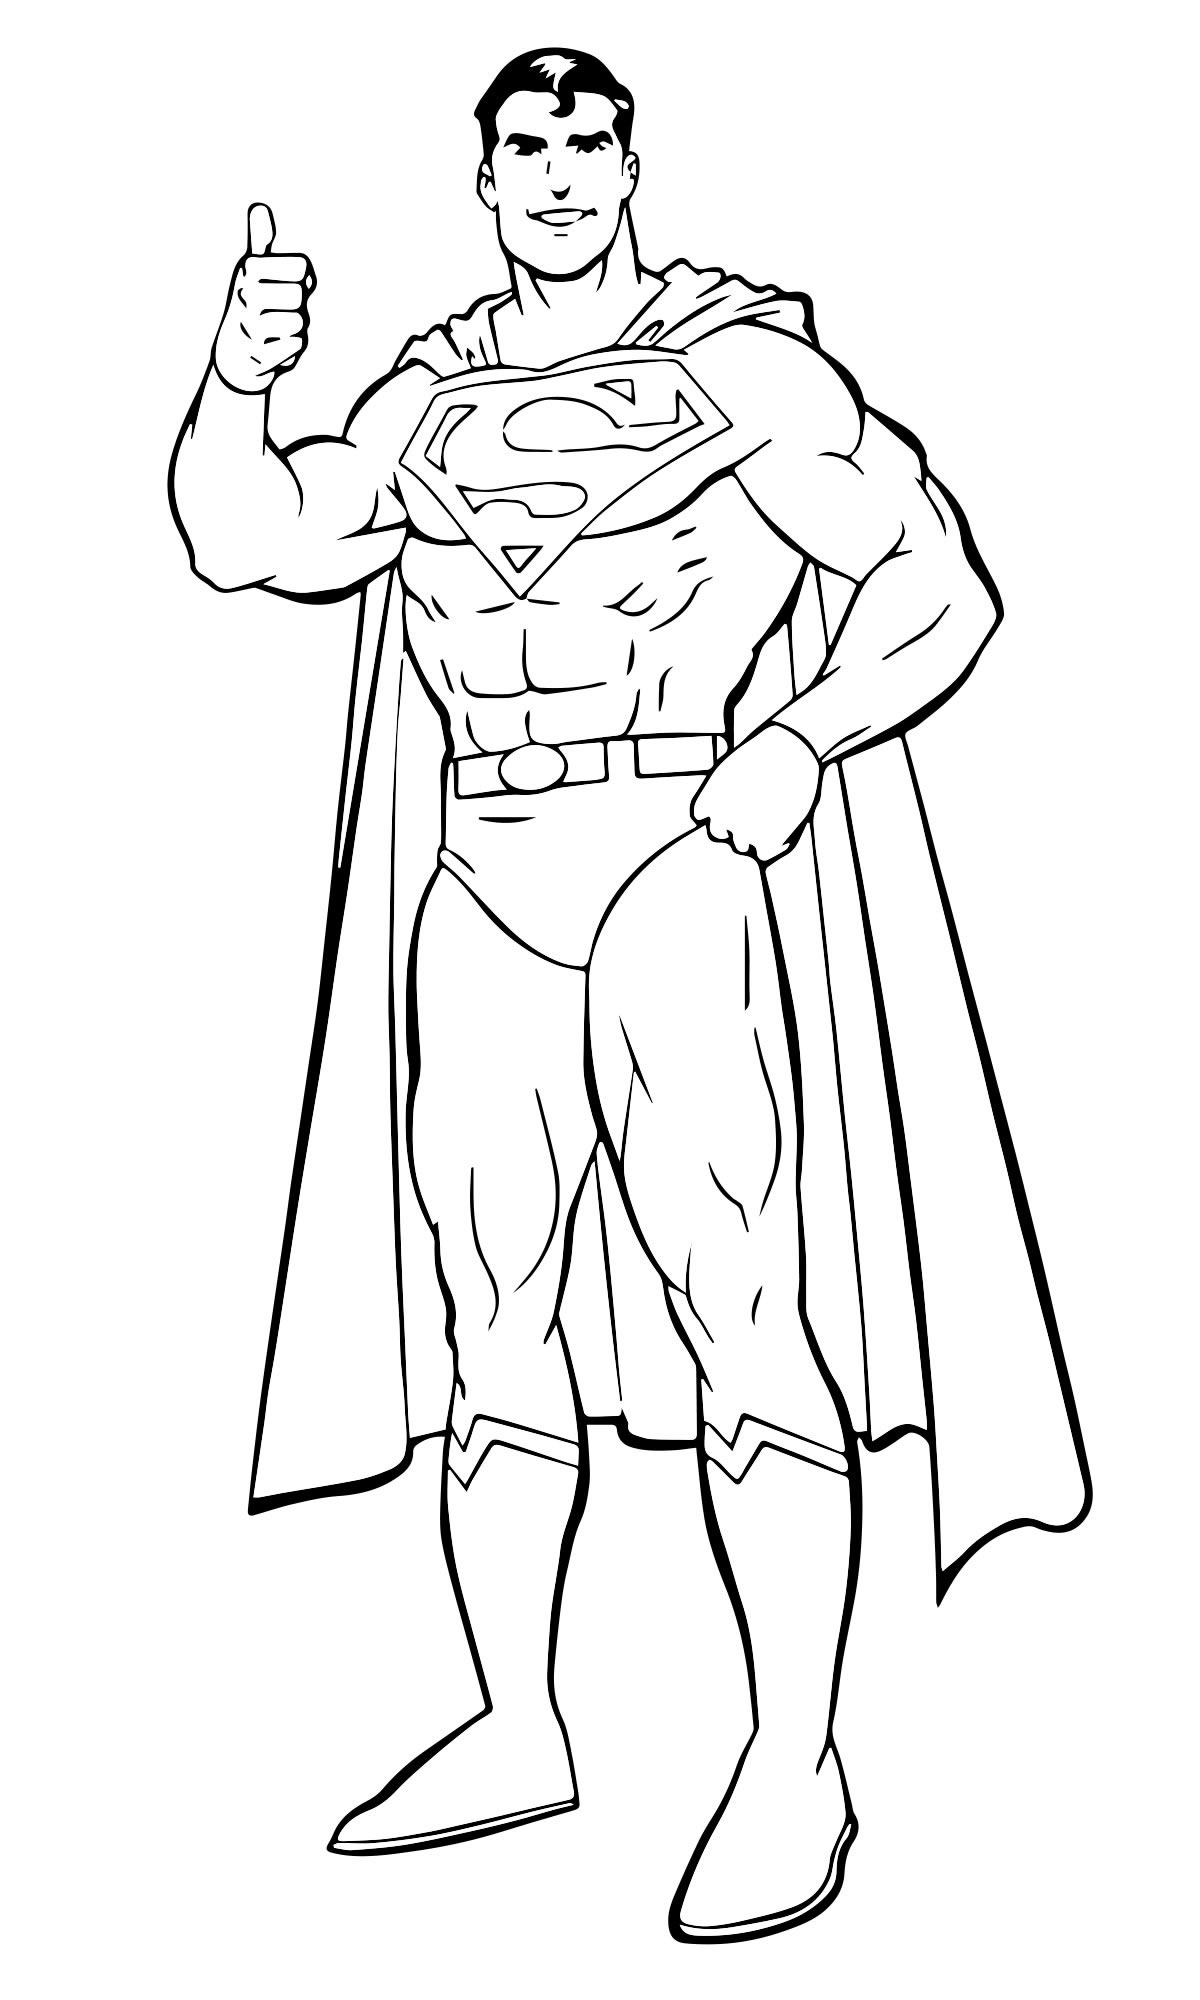 Супермен - скачать и распечатать раскраску. Супергерой комиксов, персонаж DC Comics, Кларк Кент